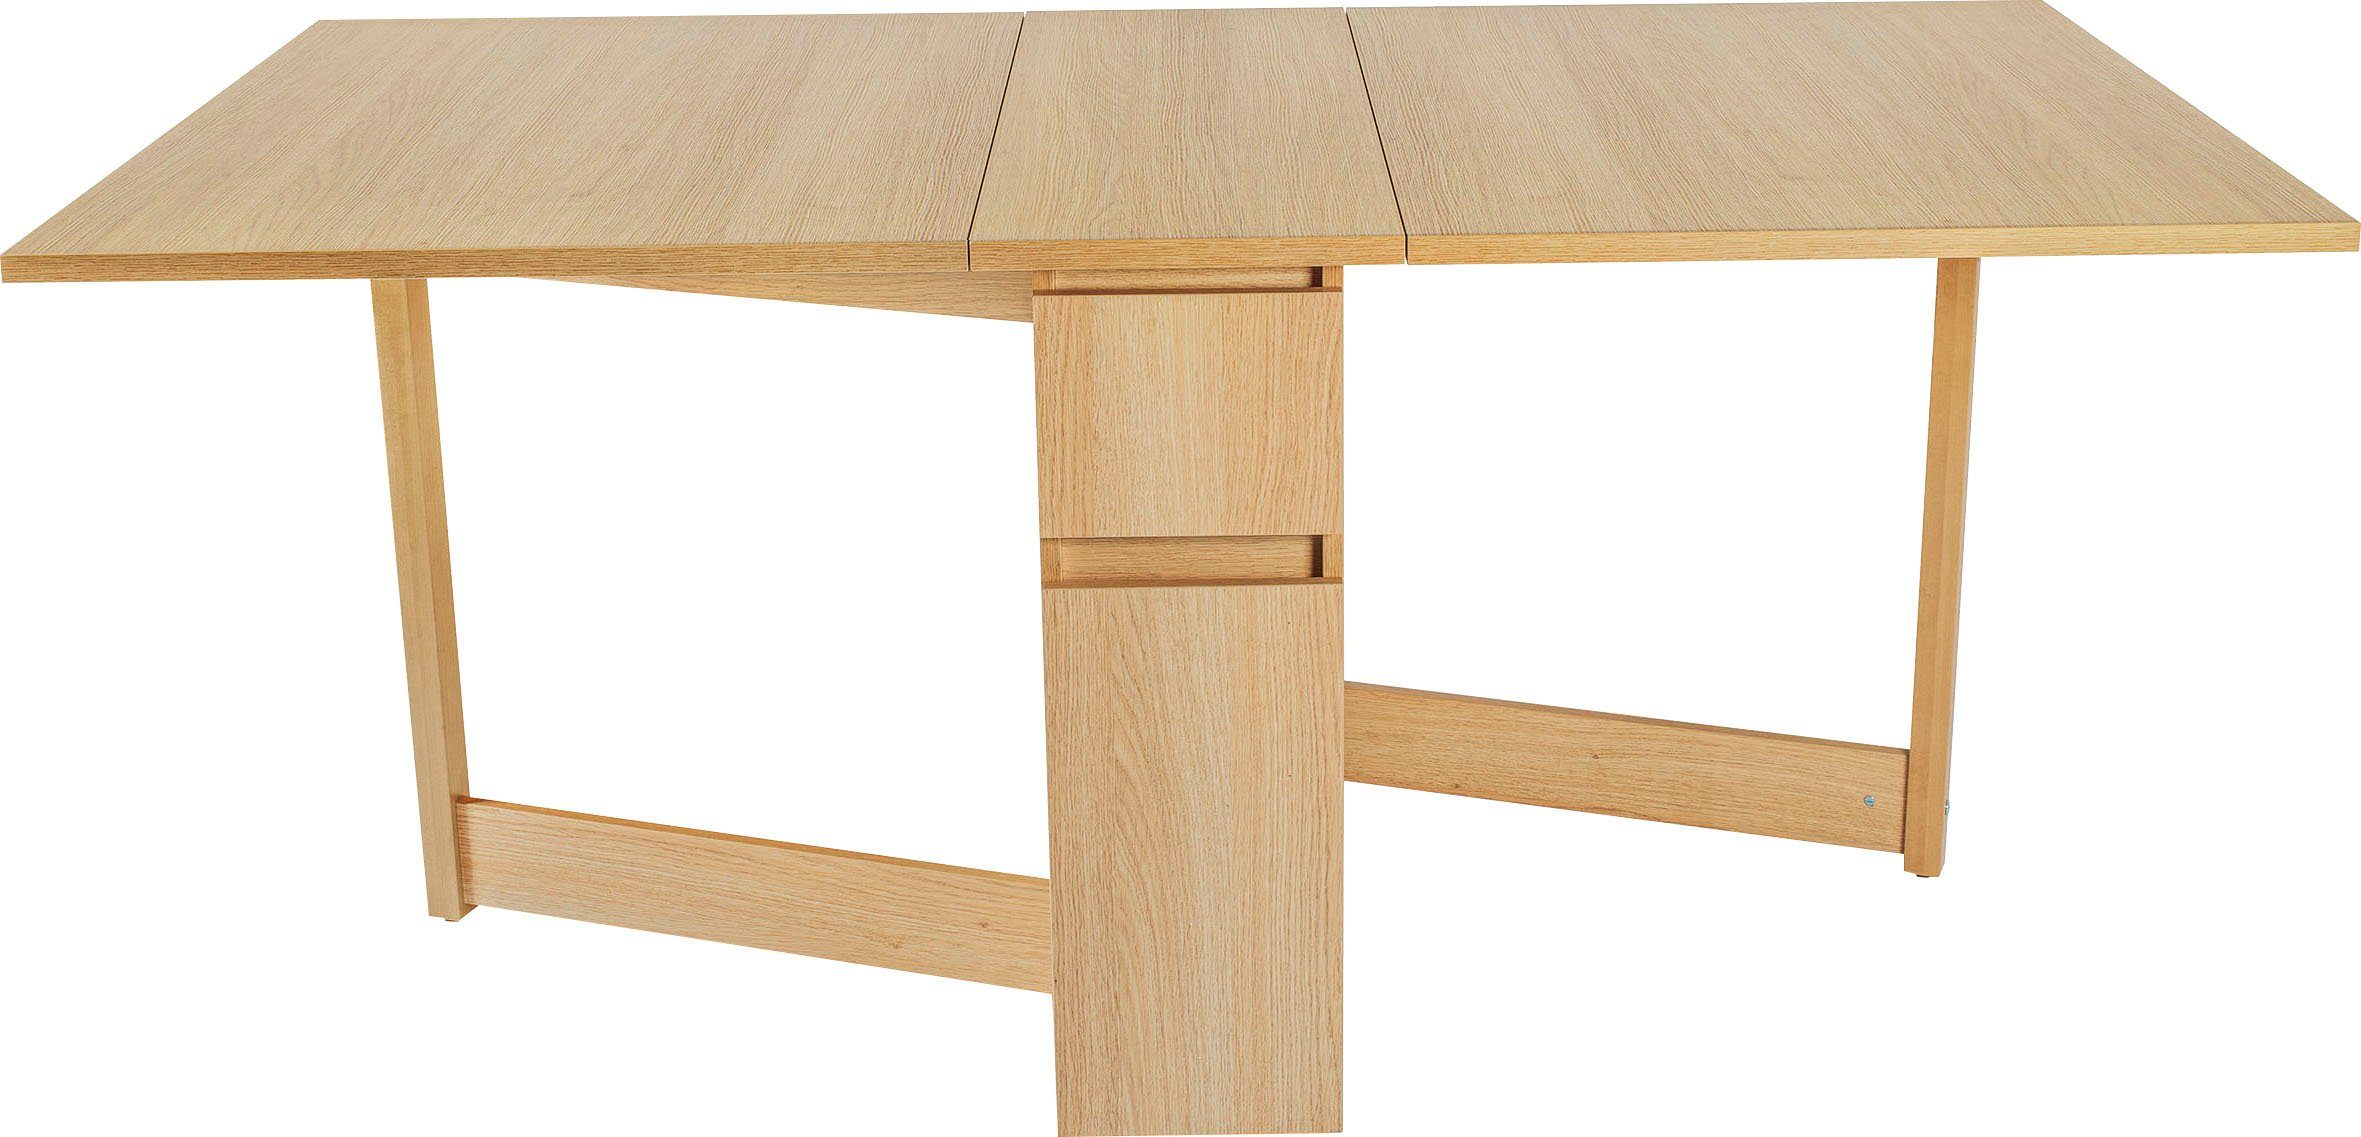 Woodman Eettafel Jasper met een rechthoekig tafelblad en uittrekfunctie, breedte 90 cm